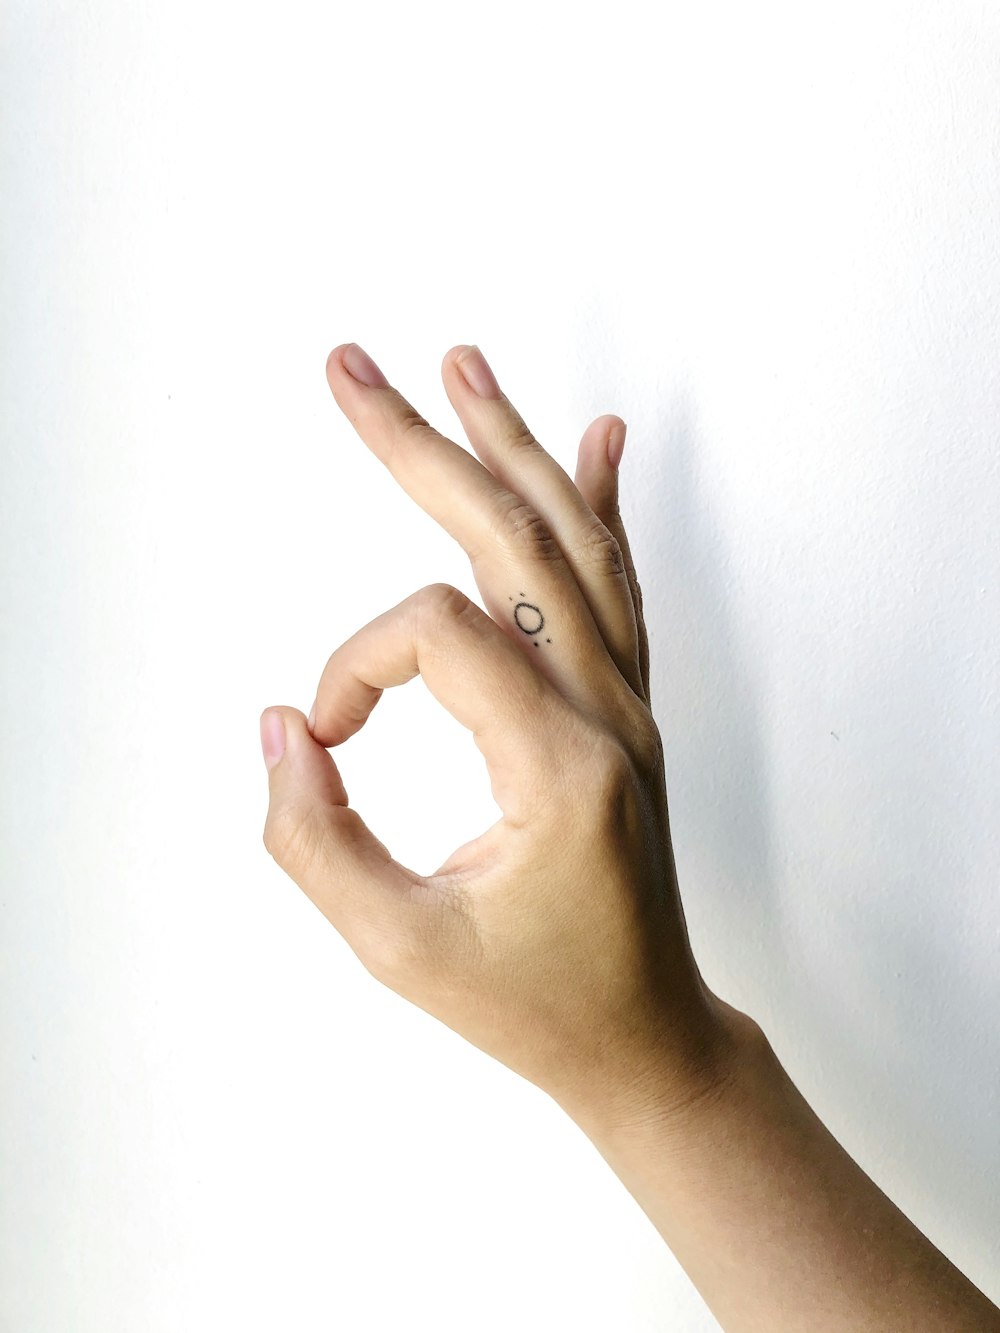 Personen linke Hand auf weißer Fläche